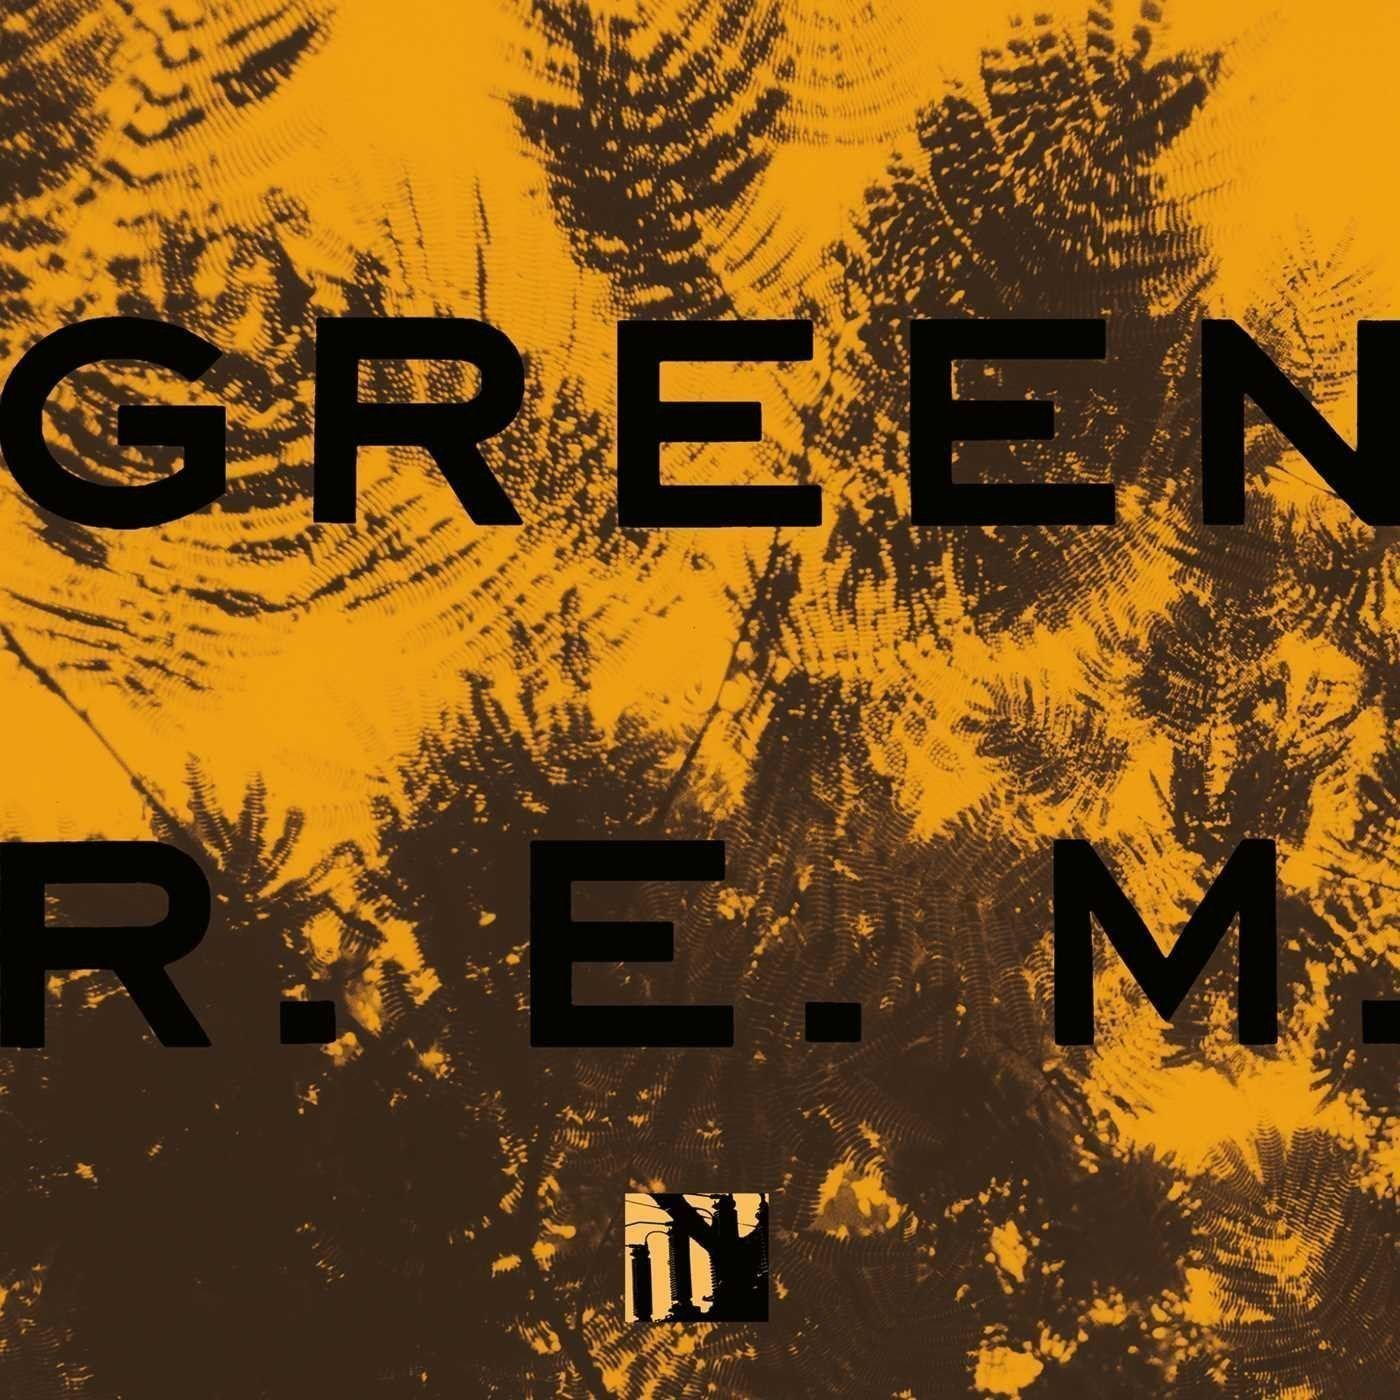 LP platňa R.E.M. - Green (LP)